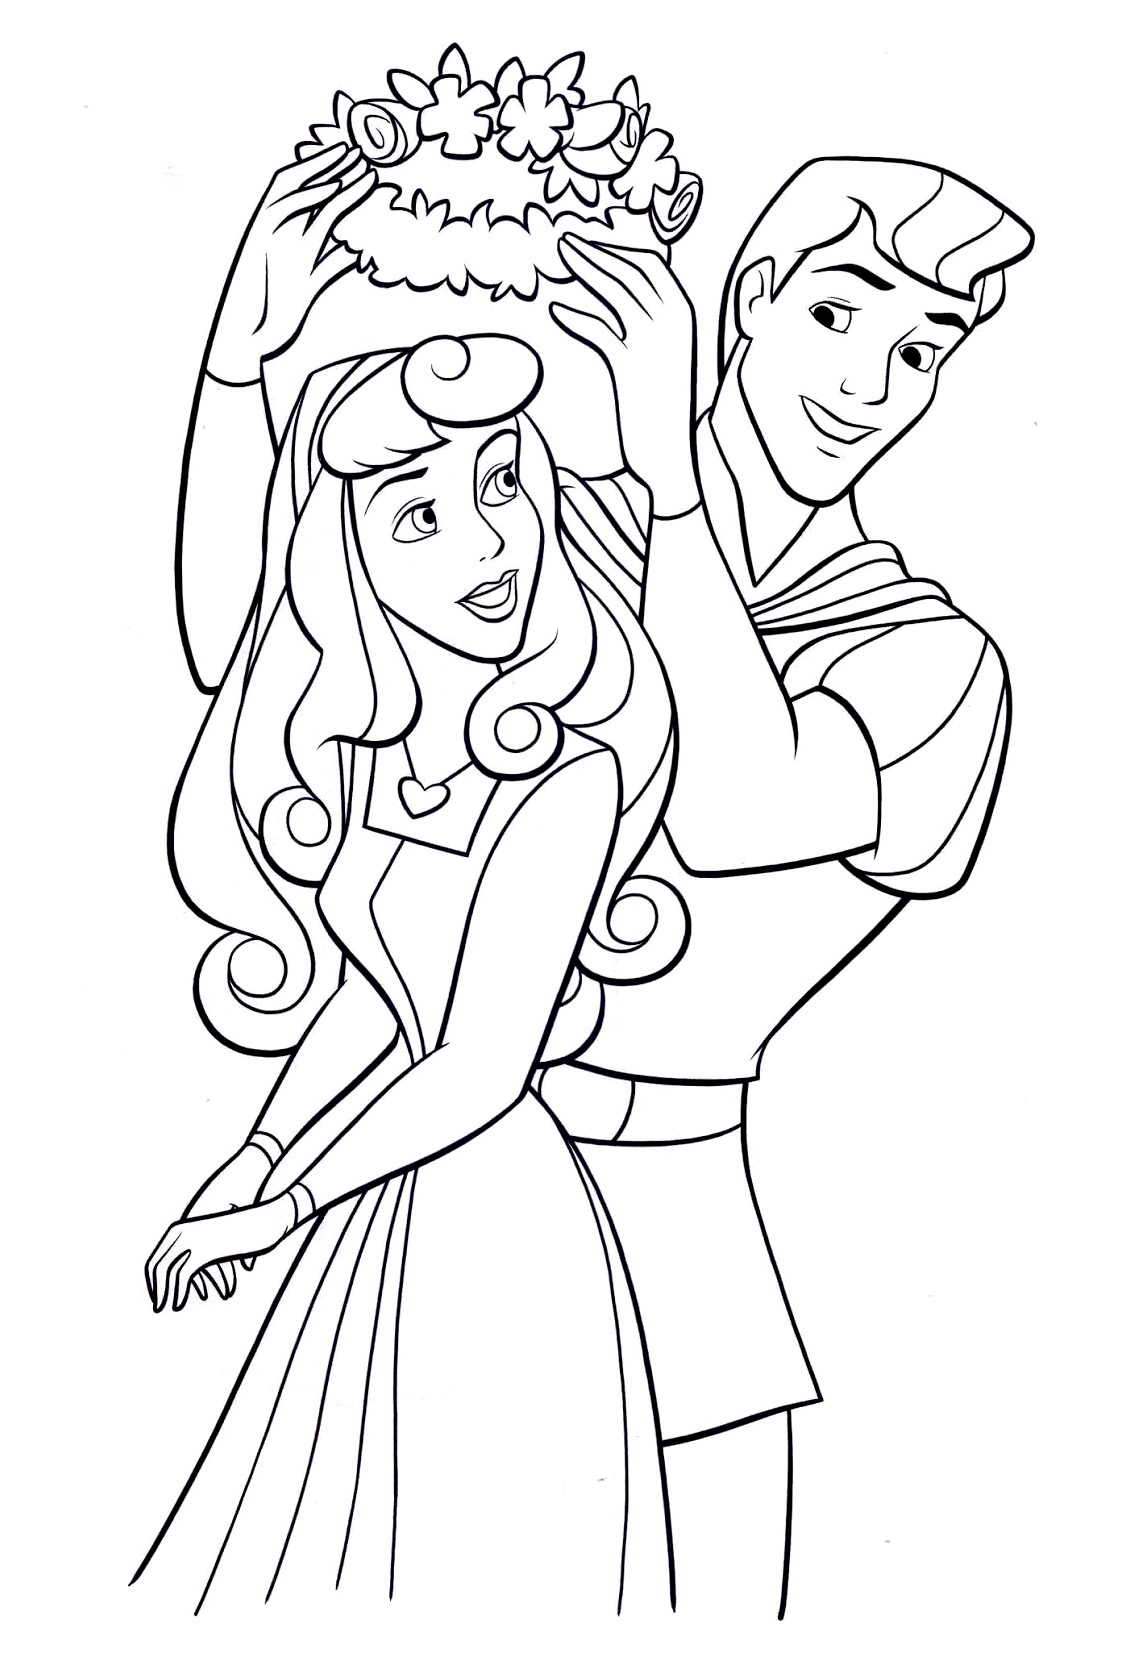 Imagen de la princesa Aurora con su príncipe